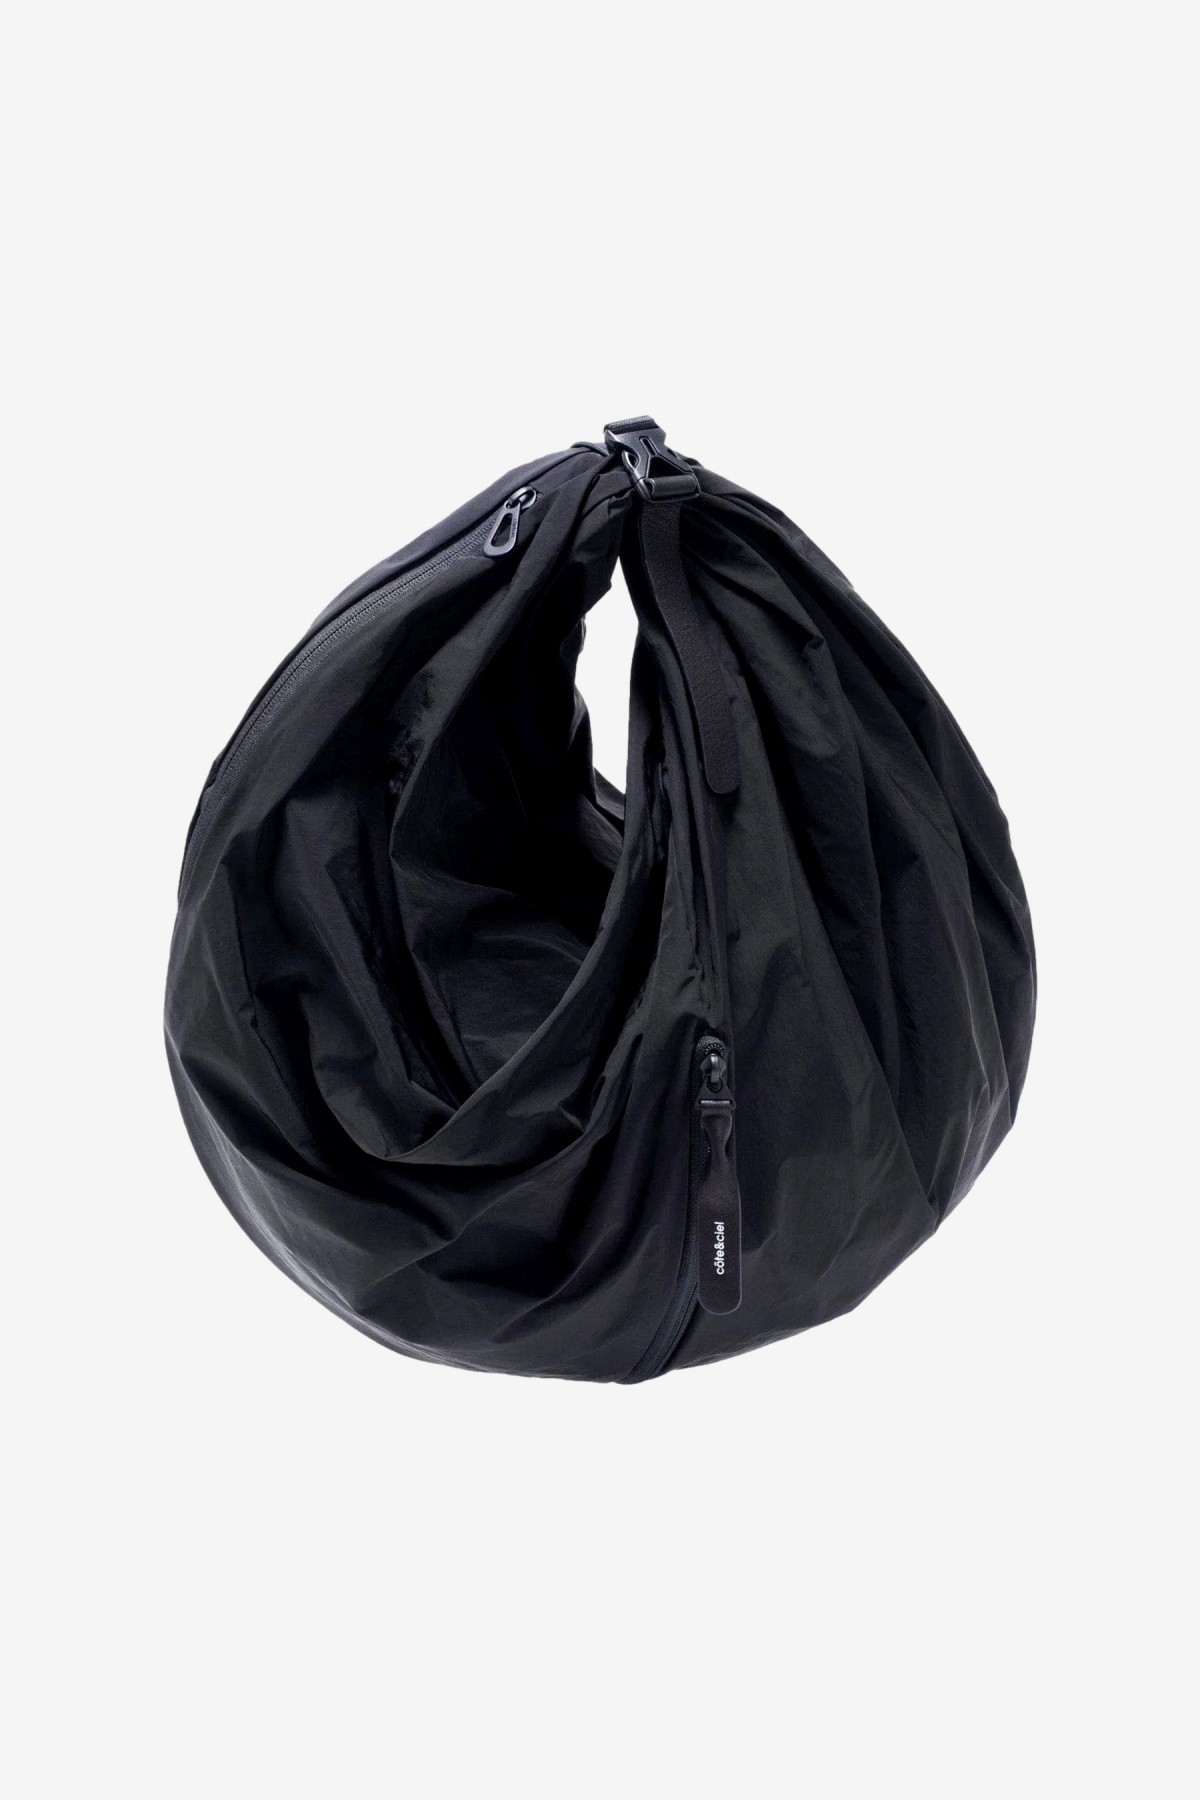 Cote & Ciel Aóos Shoulder Bag L in Black